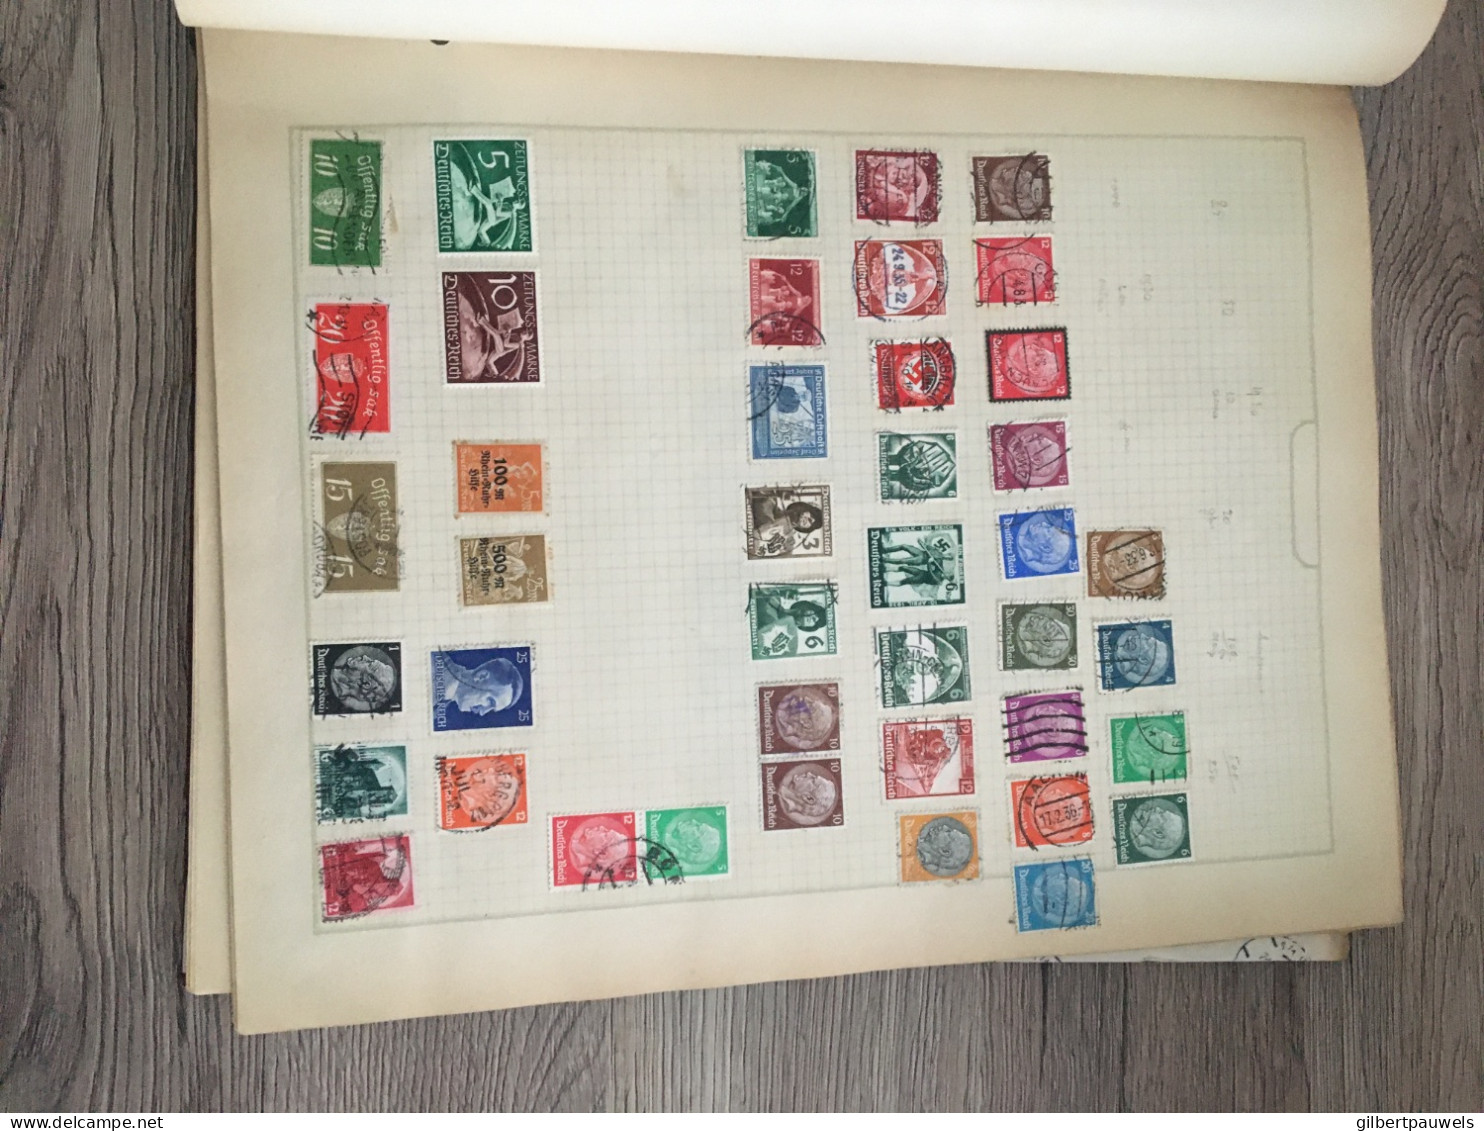 Antieke postzegel album 1920 gevuld